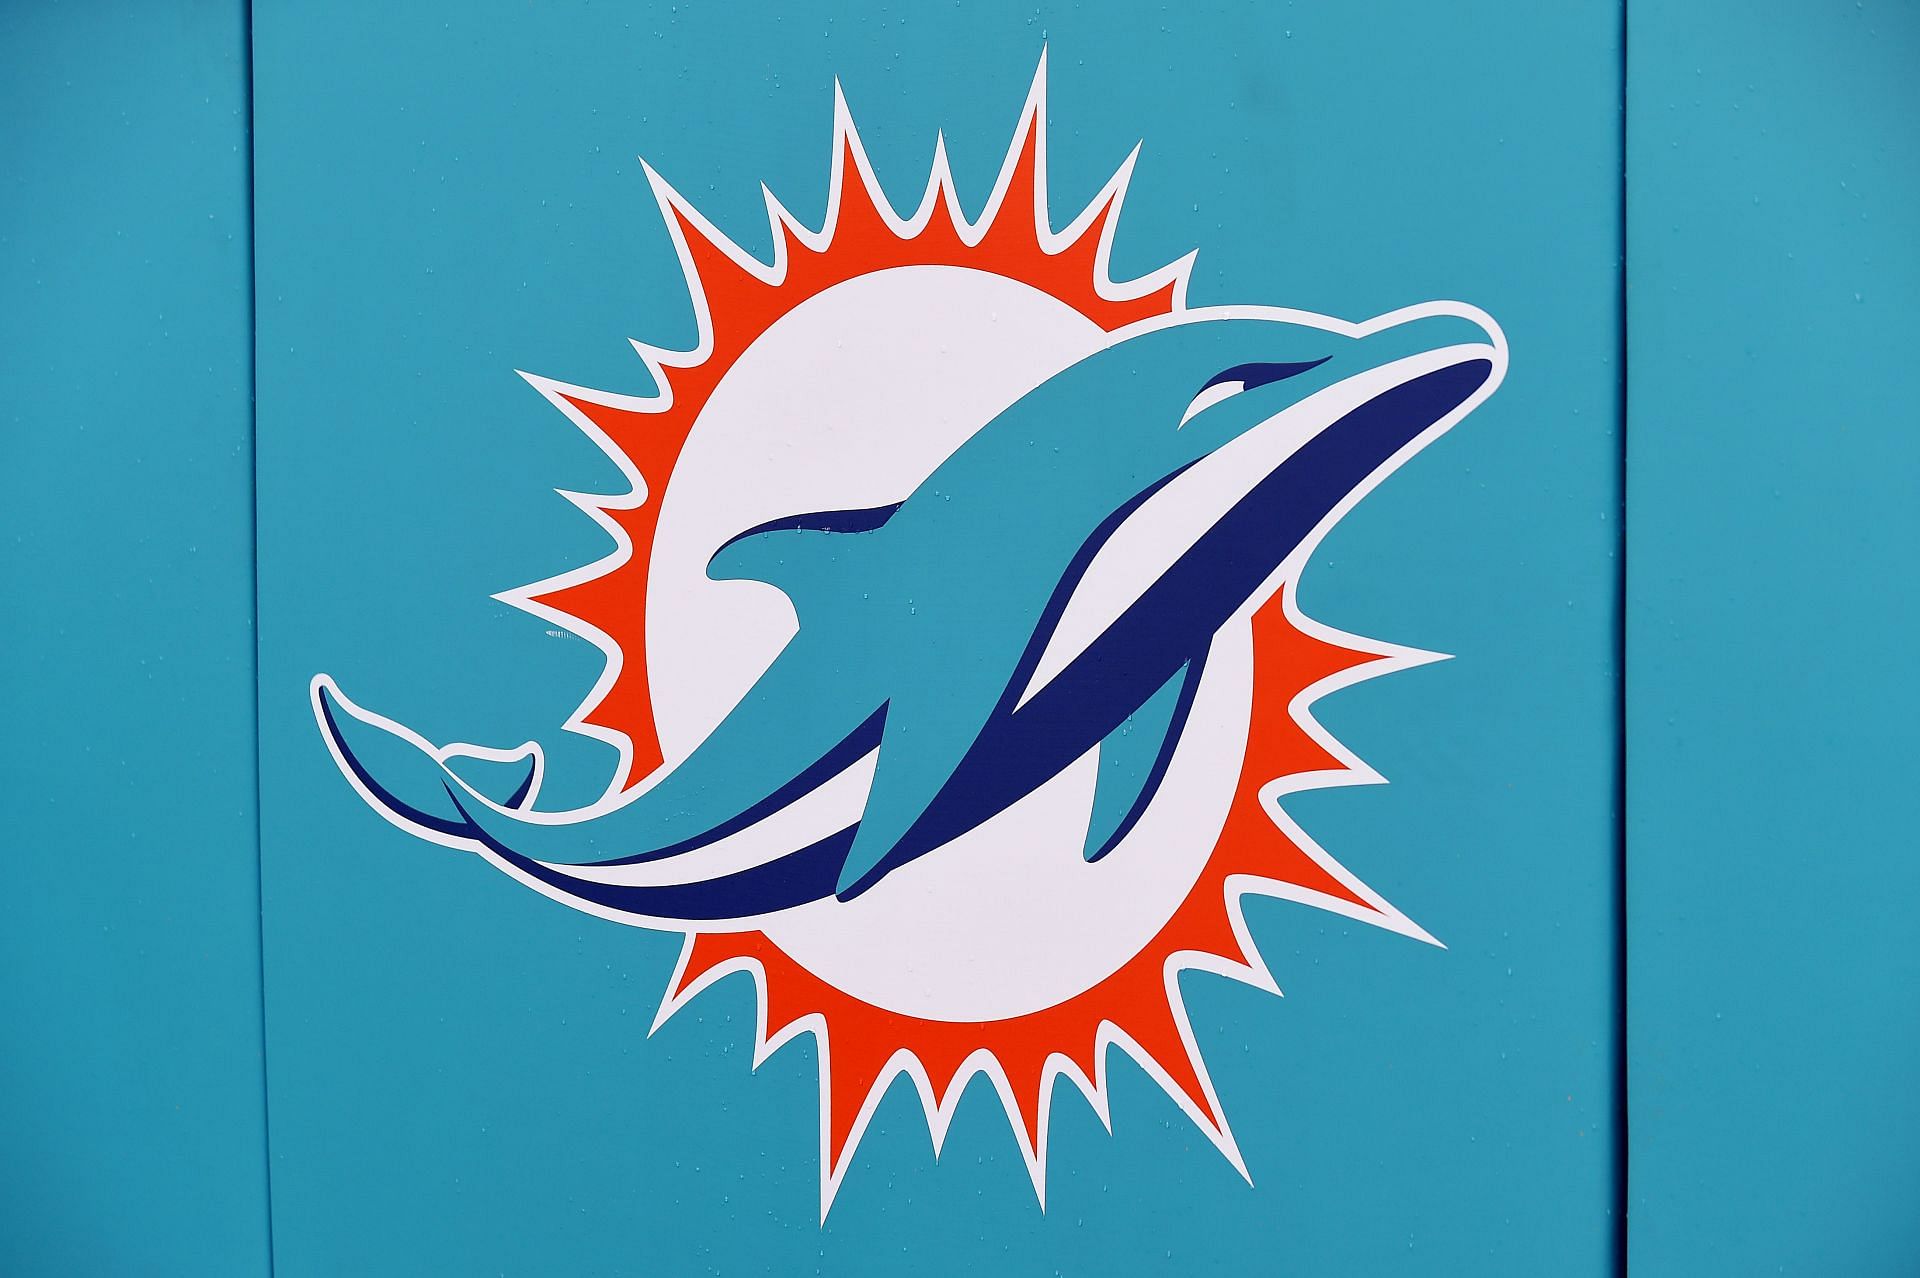 Miami Dolphins logo vs Jets